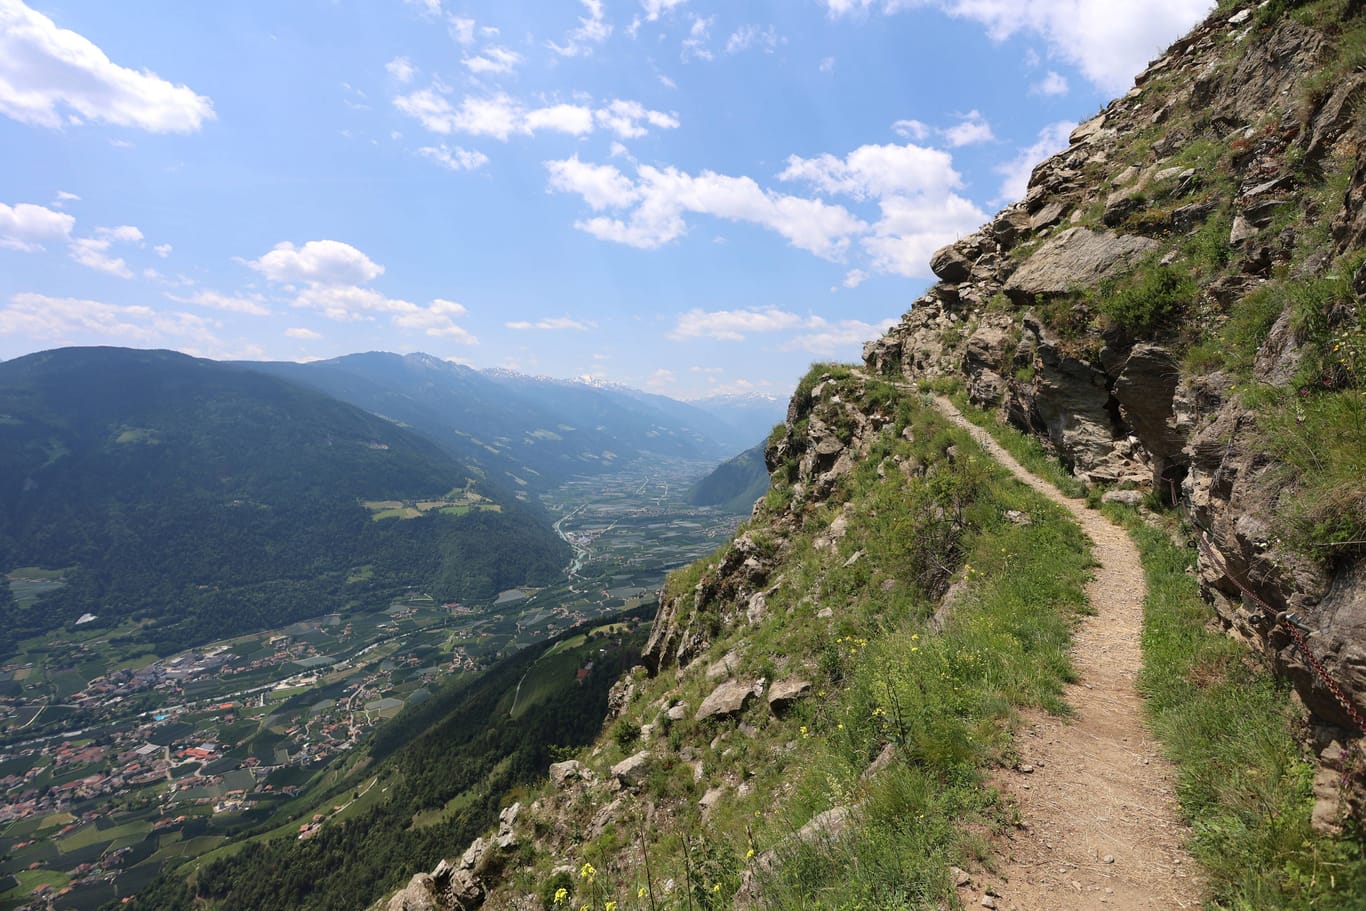 Wanderweg mit Blick auf den Vellauer Felsenweg und dem Vinschgau im Hintergrund.